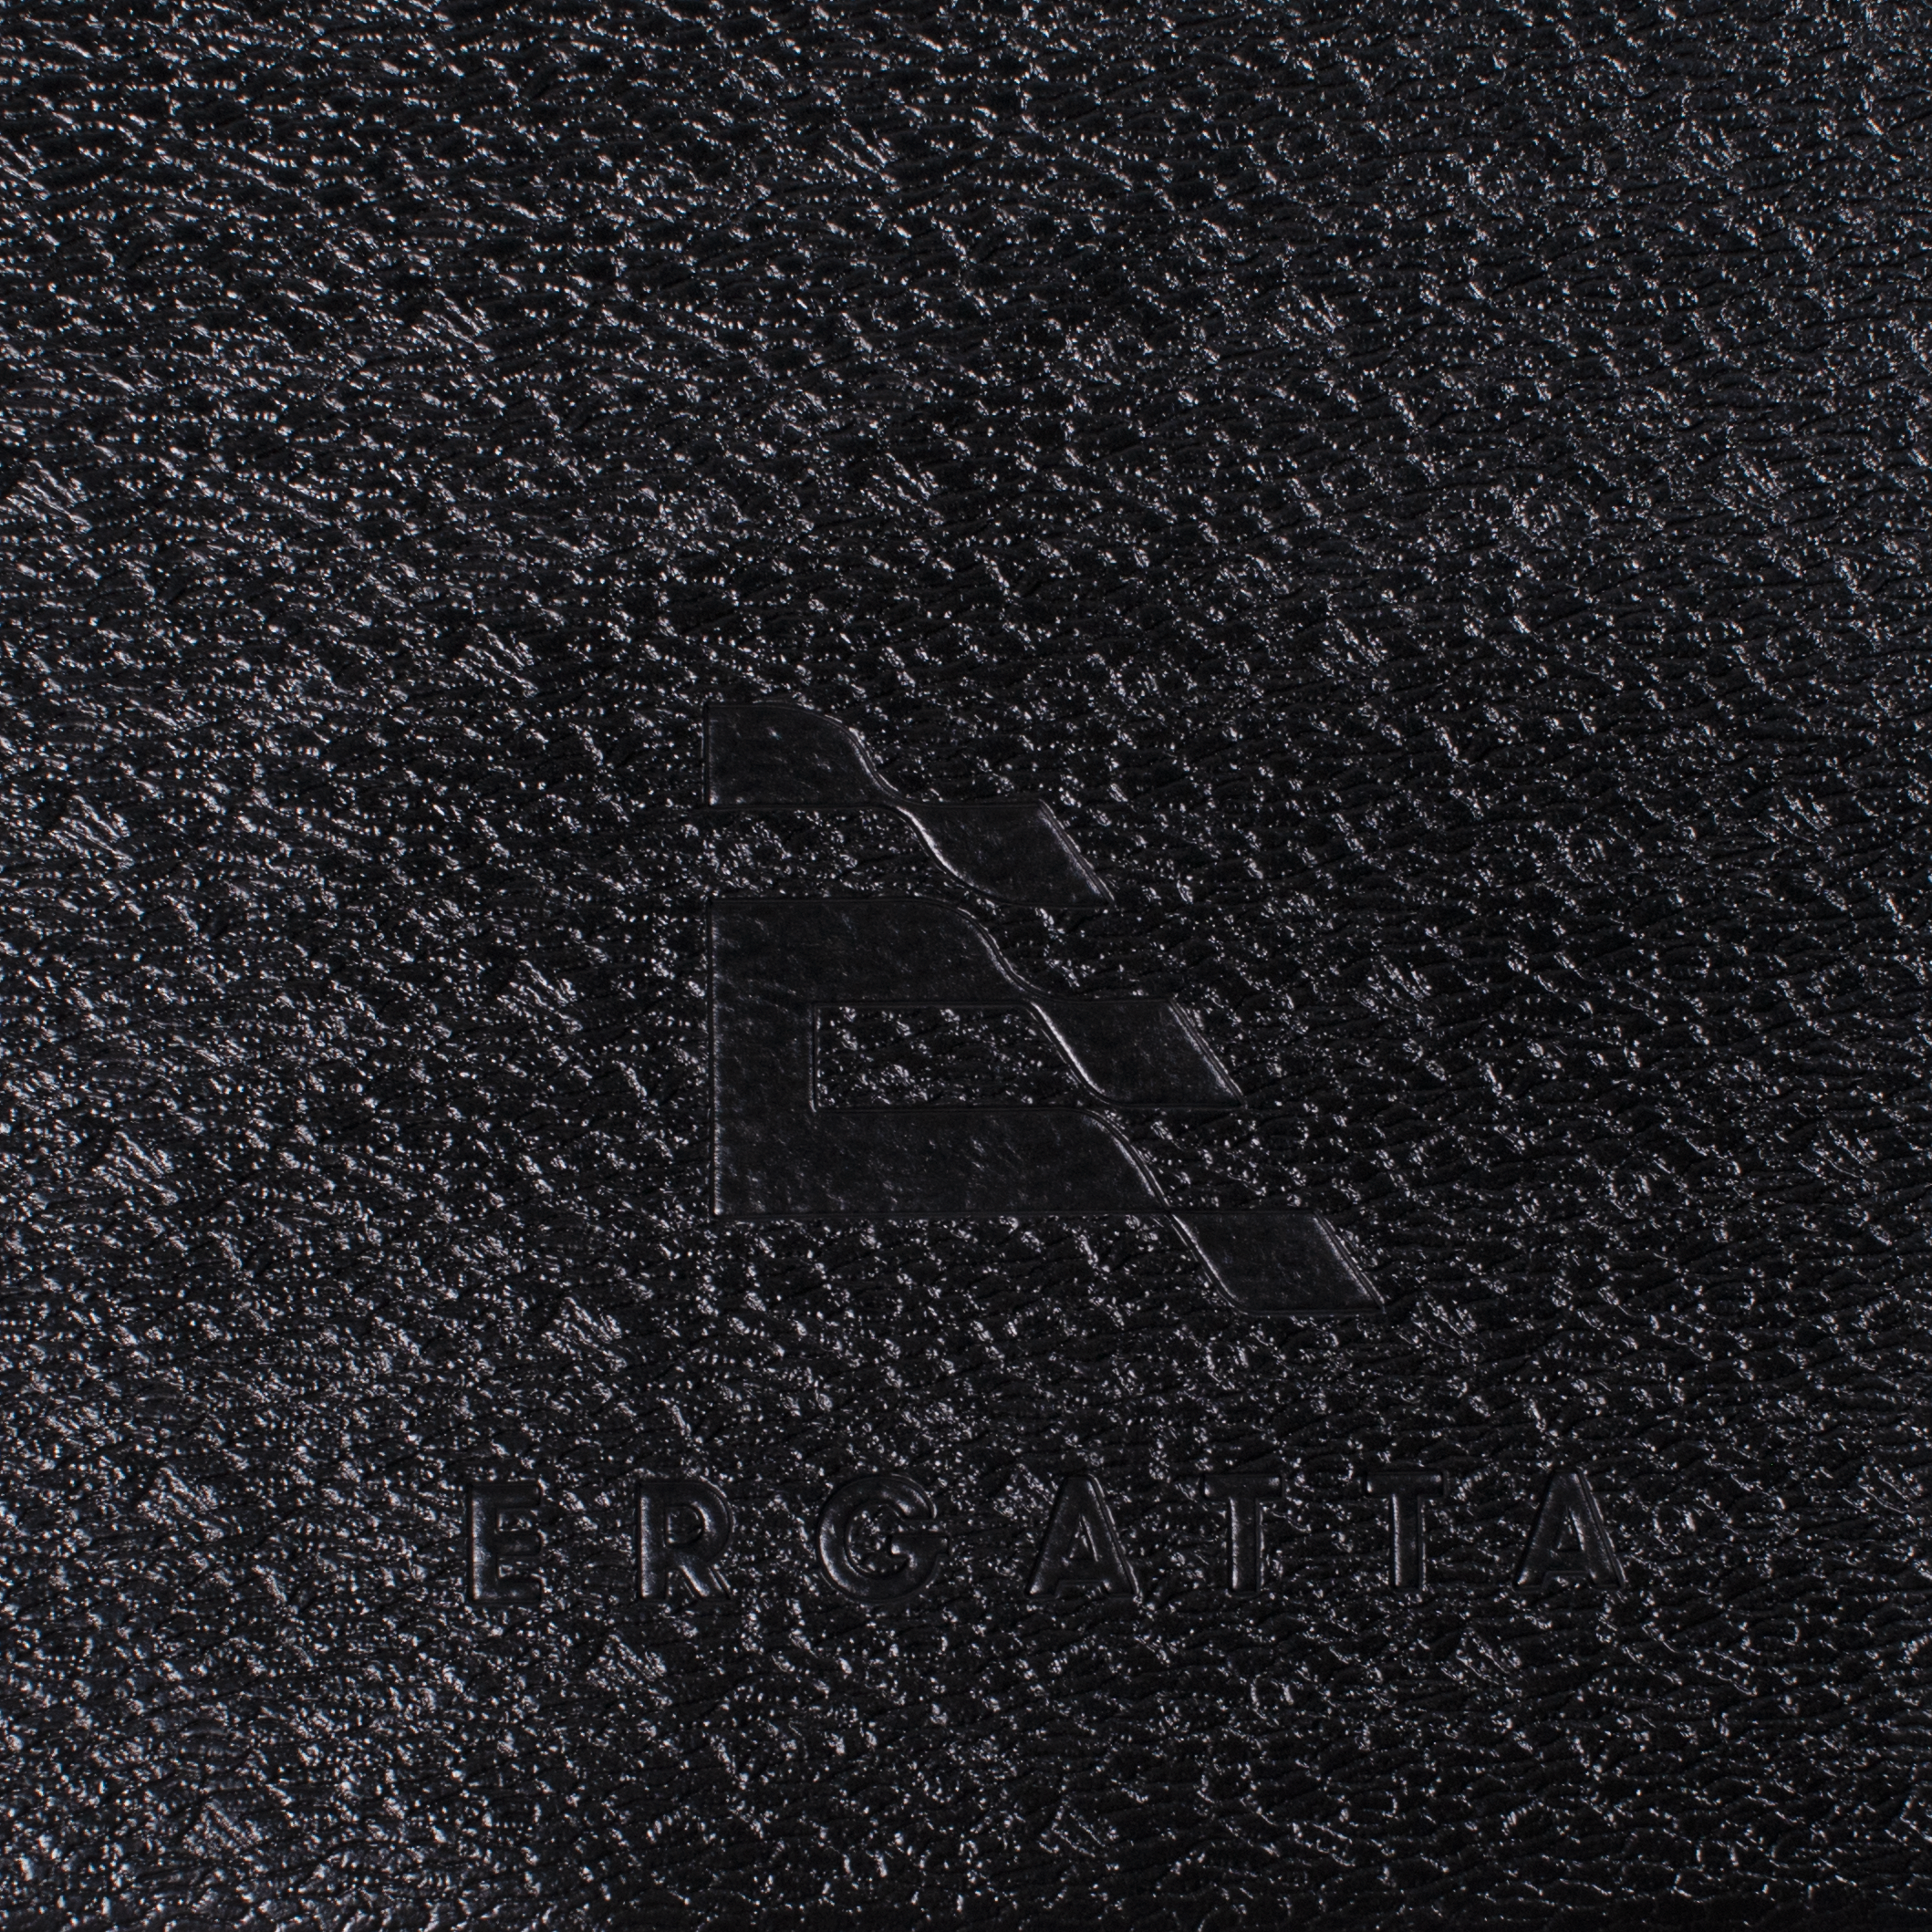 closeup of Ergatta logo on Ergatta rower mat